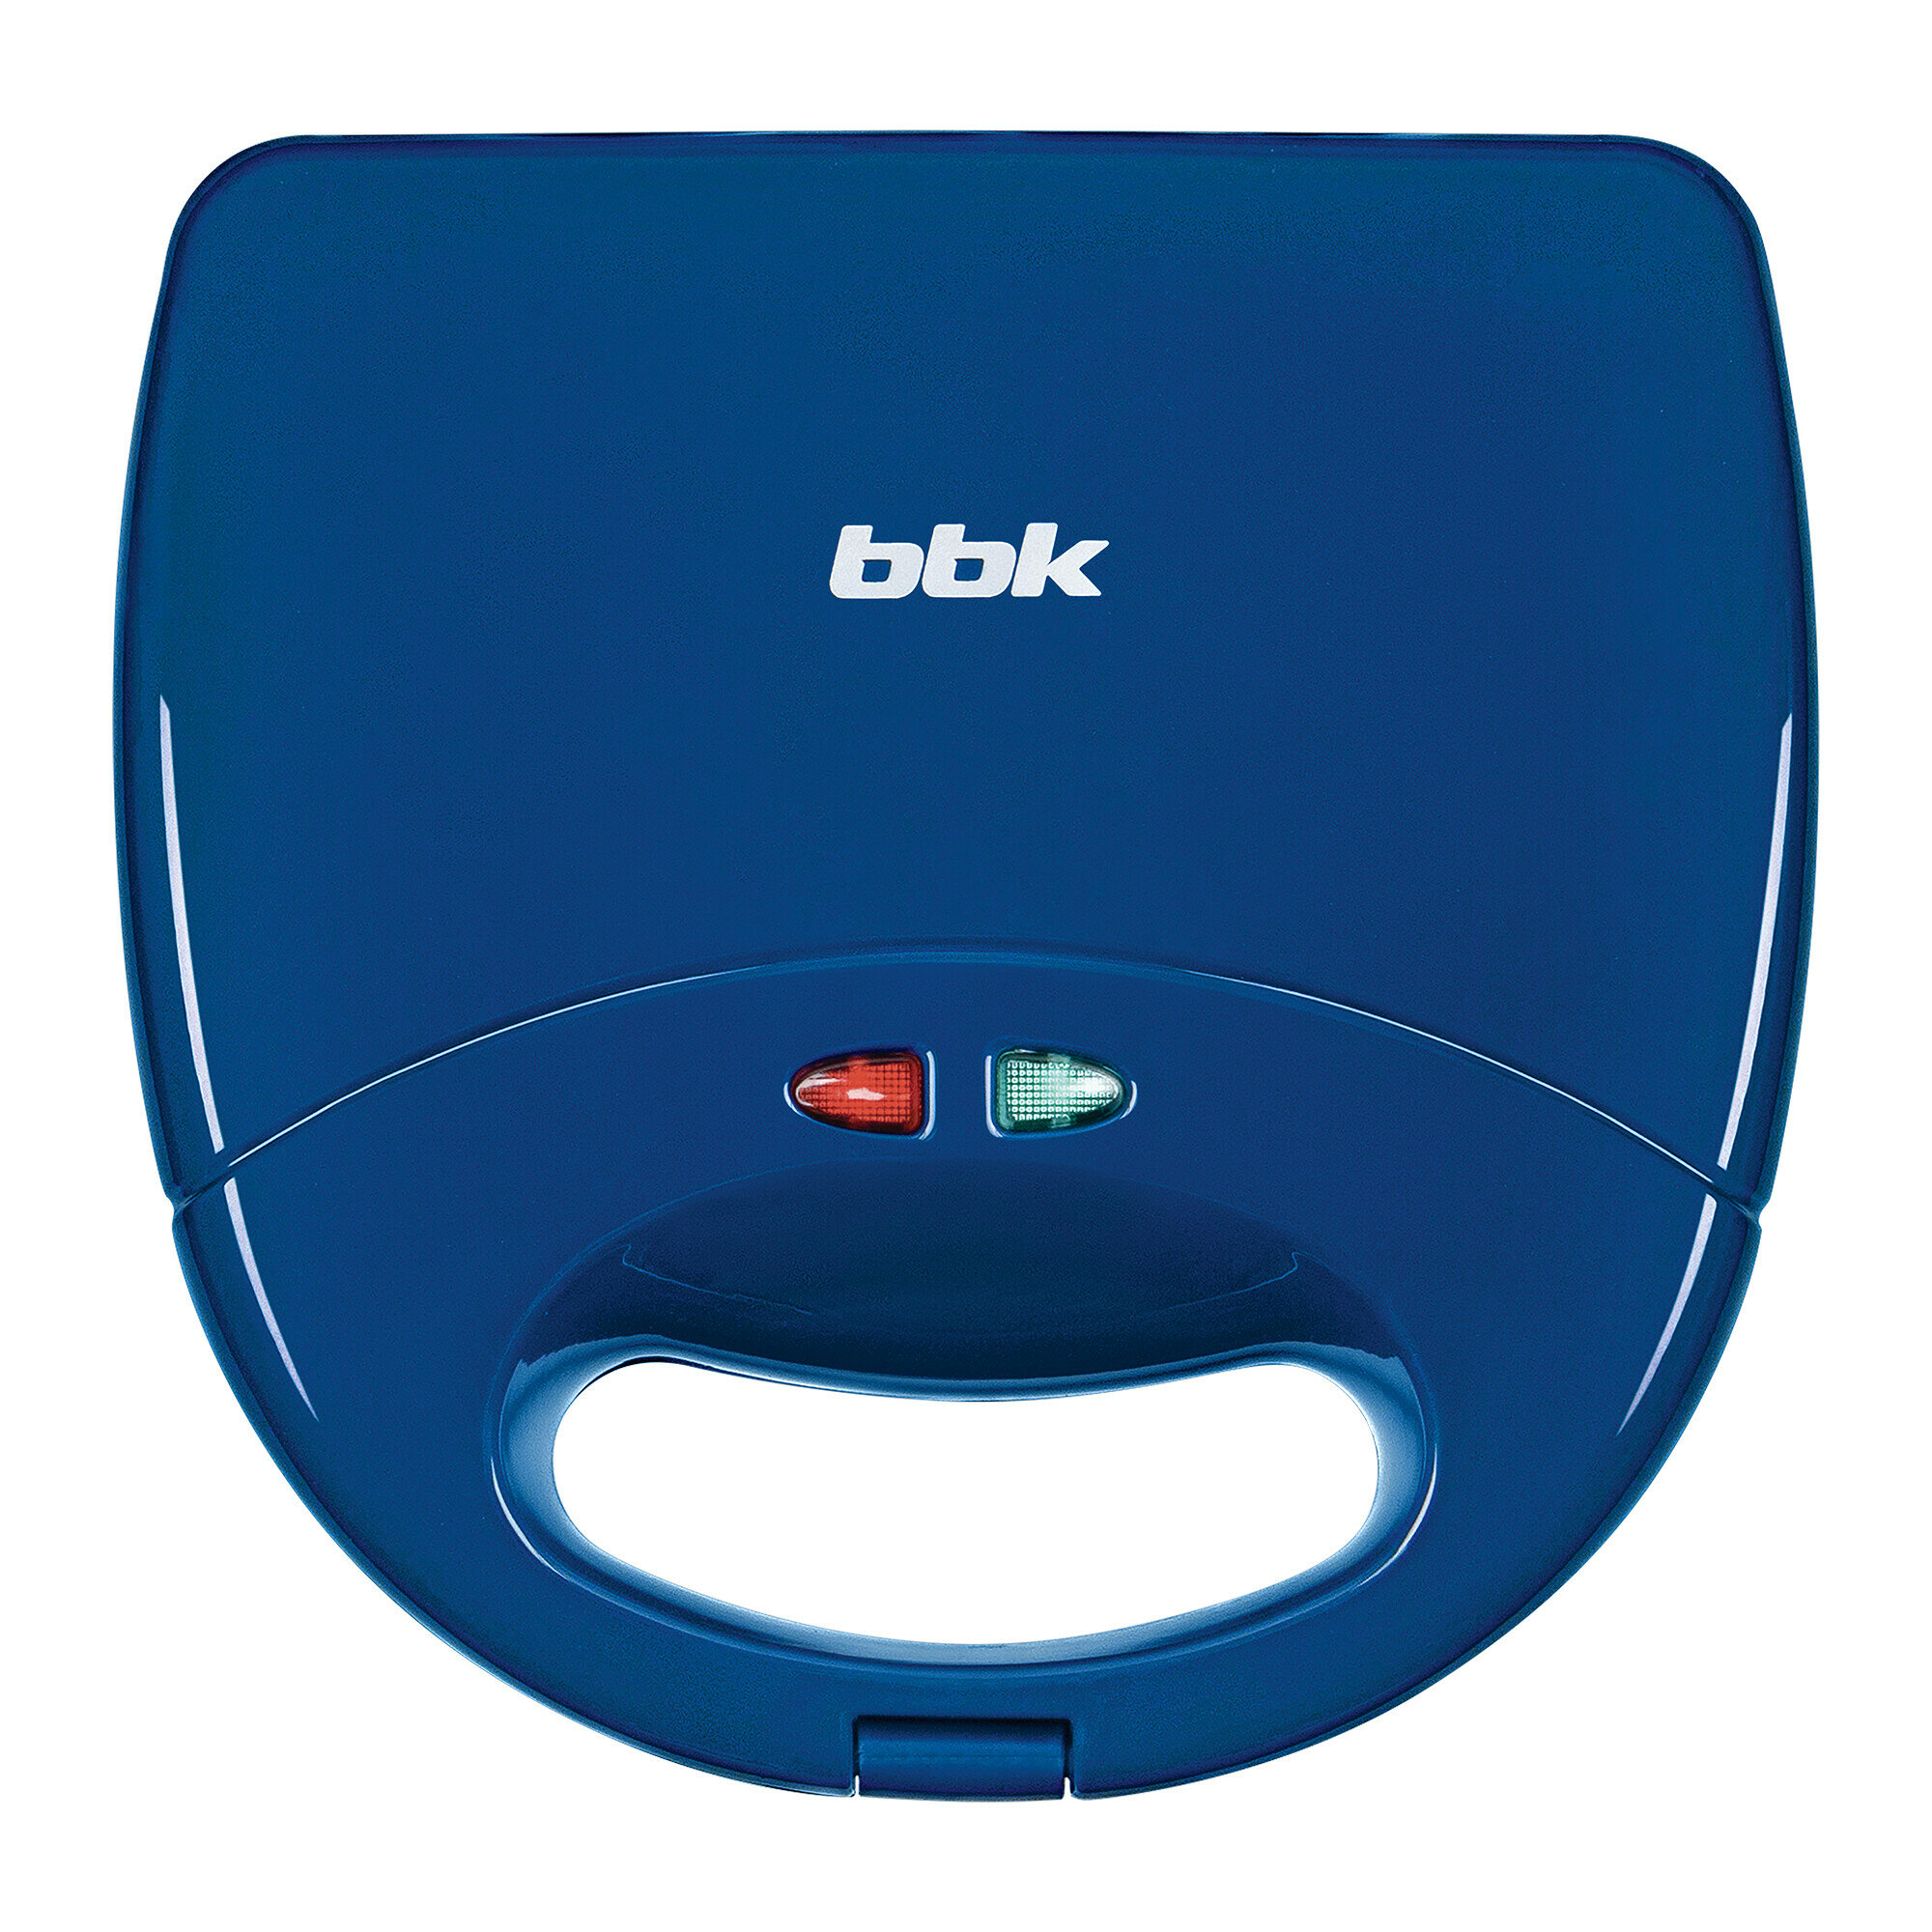 Прибор для выпечки BBK ES028 синий